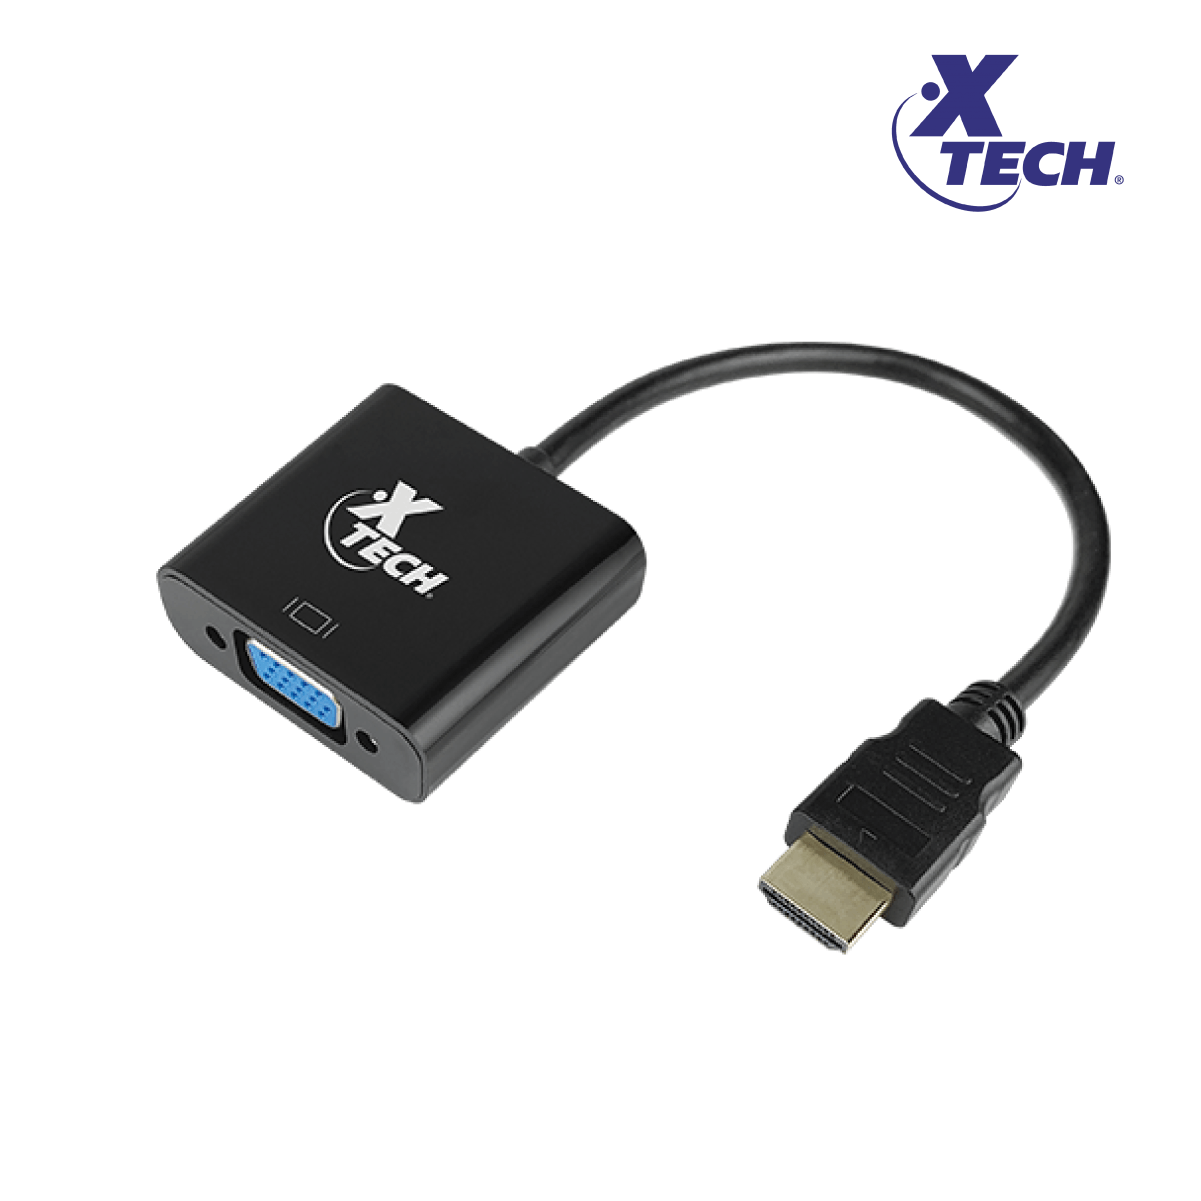 Adaptador HDMI a VGA Xtech XTC-363 - Trescom